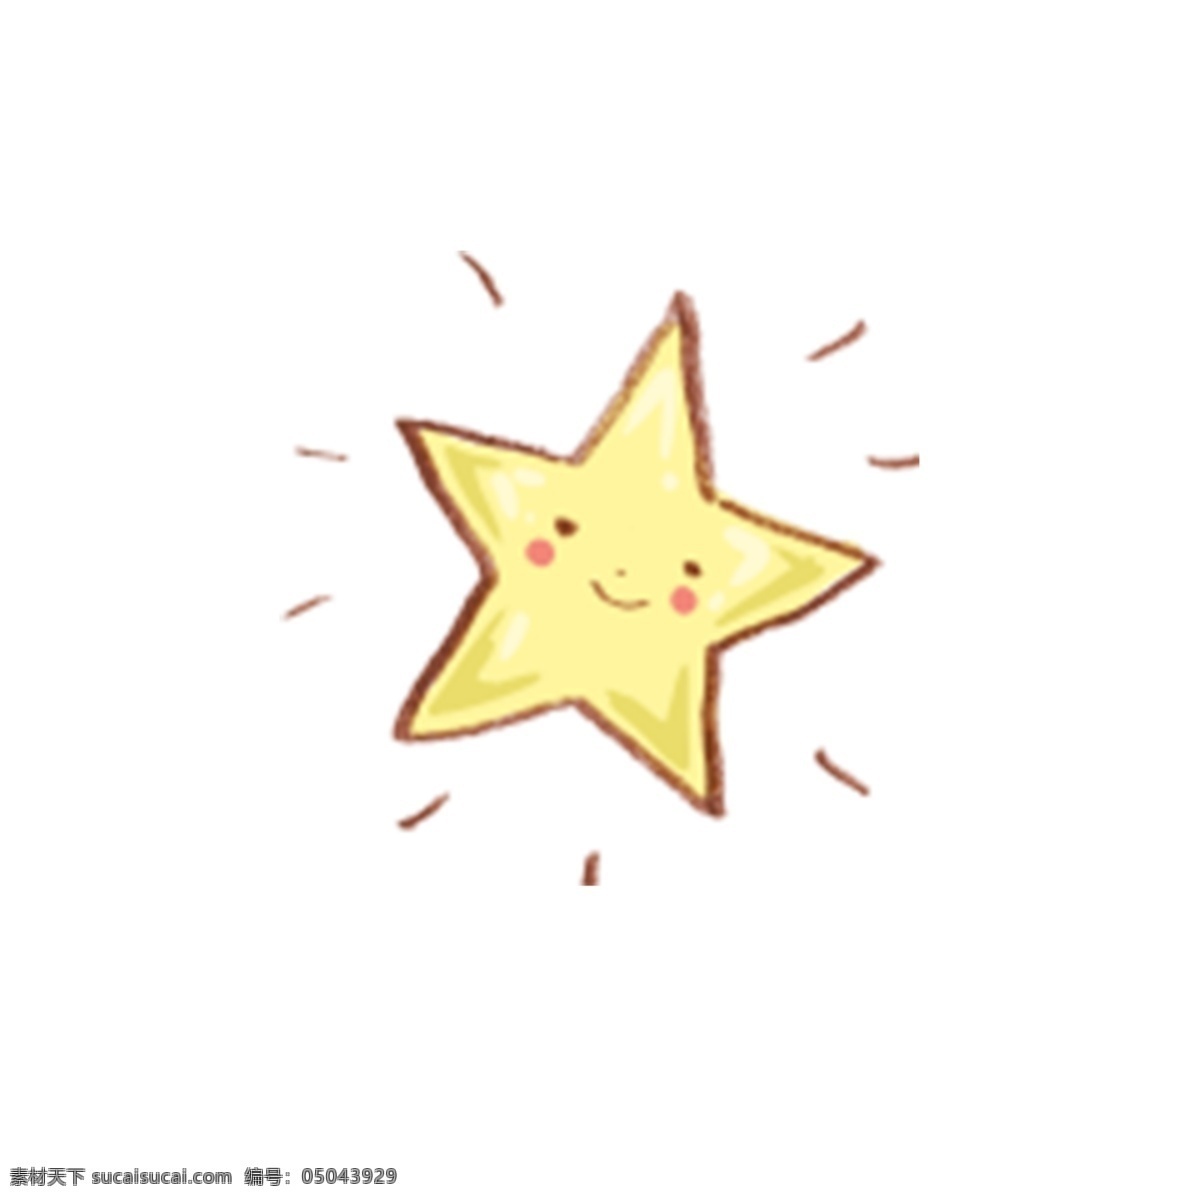 五角星星 六角星星 八角星星 扁平化图标 星星简笔画 星星元素 星星logo 星星设计 五角星图标 儿童星星 卡通星星 手绘星星 星星素描 星星矢量